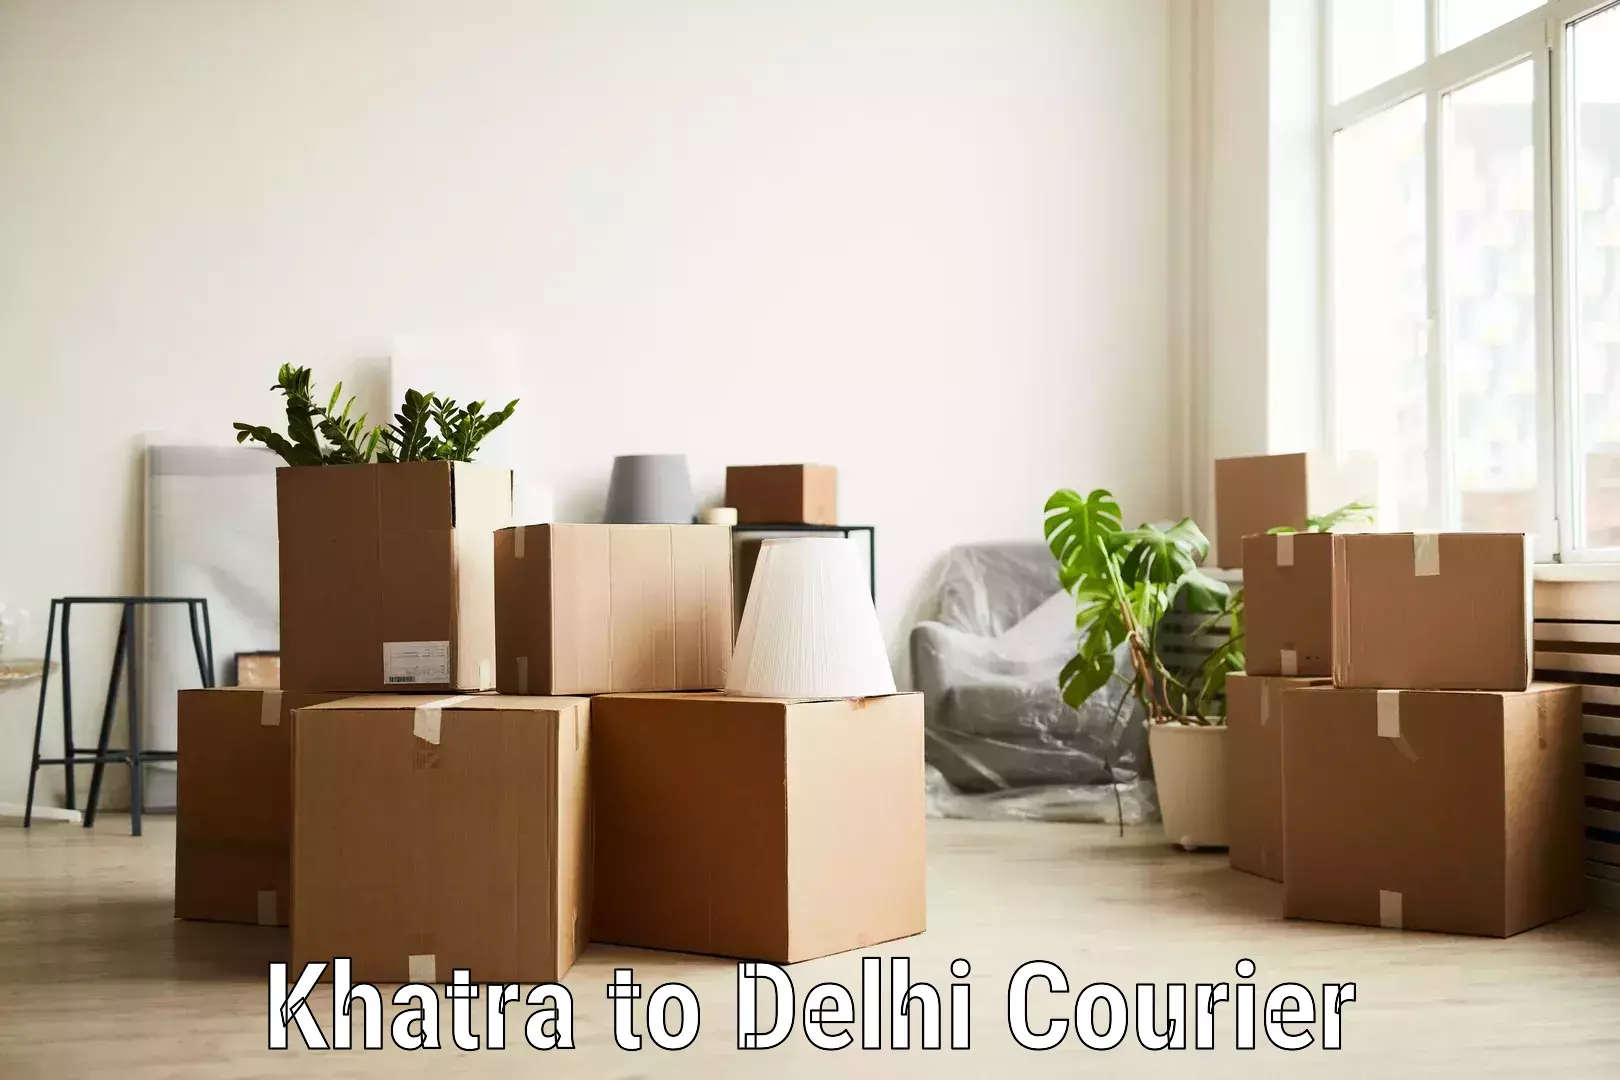 Efficient logistics management in Khatra to Kalkaji